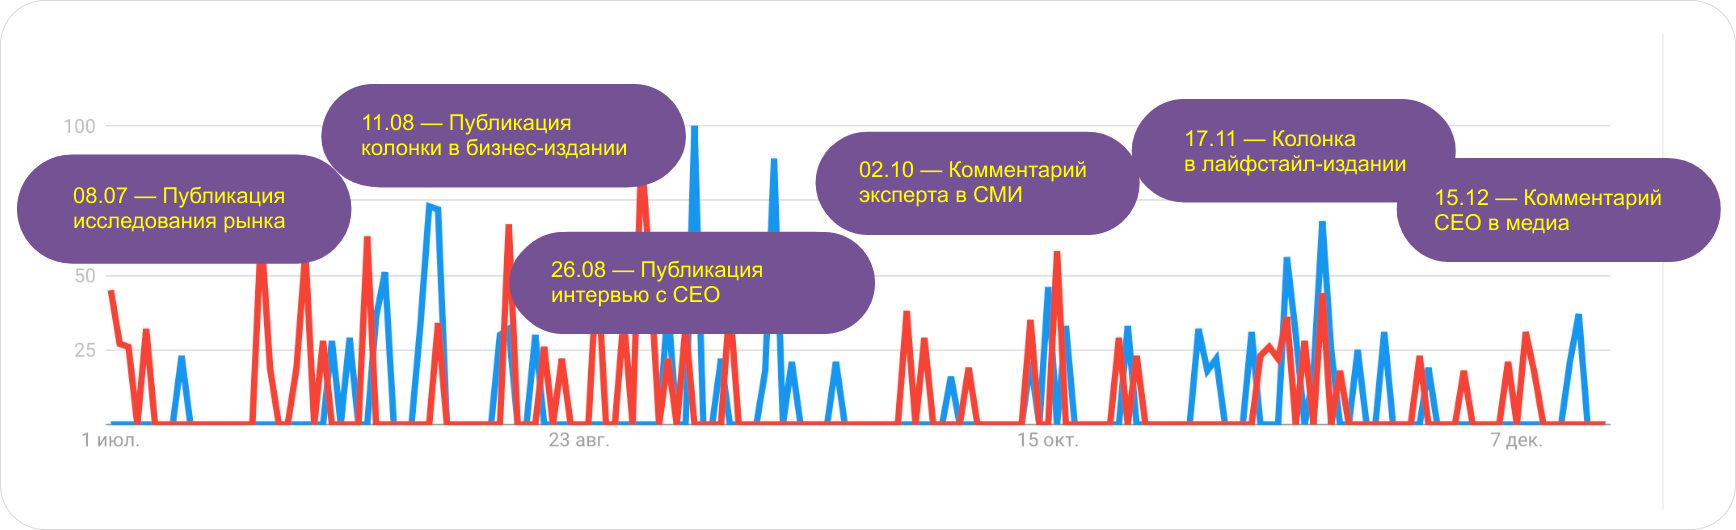 Скриншот графика по посещаемости сайта из Яндекс-метрики, отмечены даты выхода публикаций в СМИ